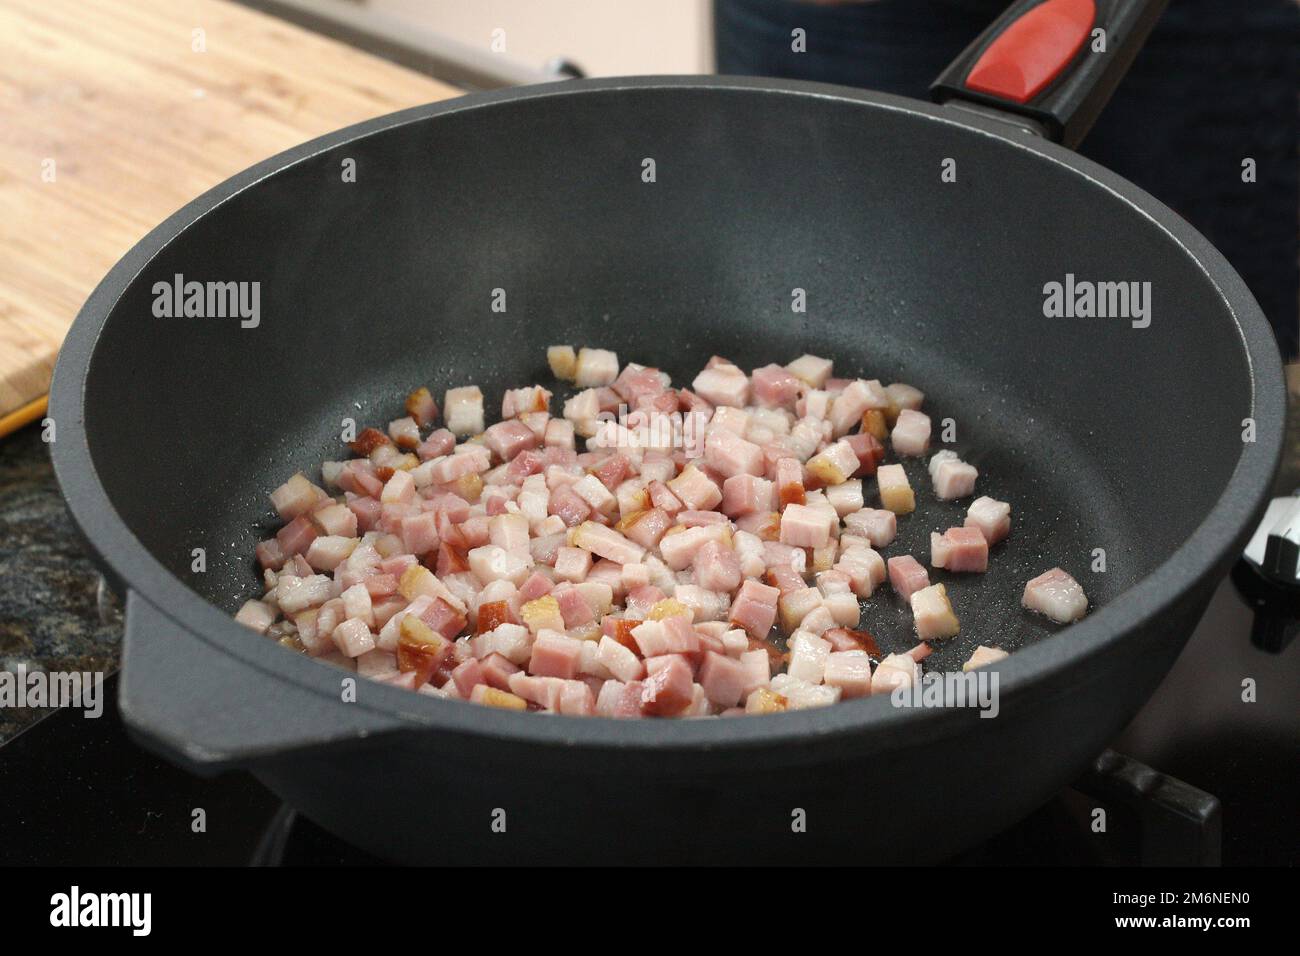 Faites frire du bacon émincé dans la poêle pour faire de la viande de porc. Banque D'Images